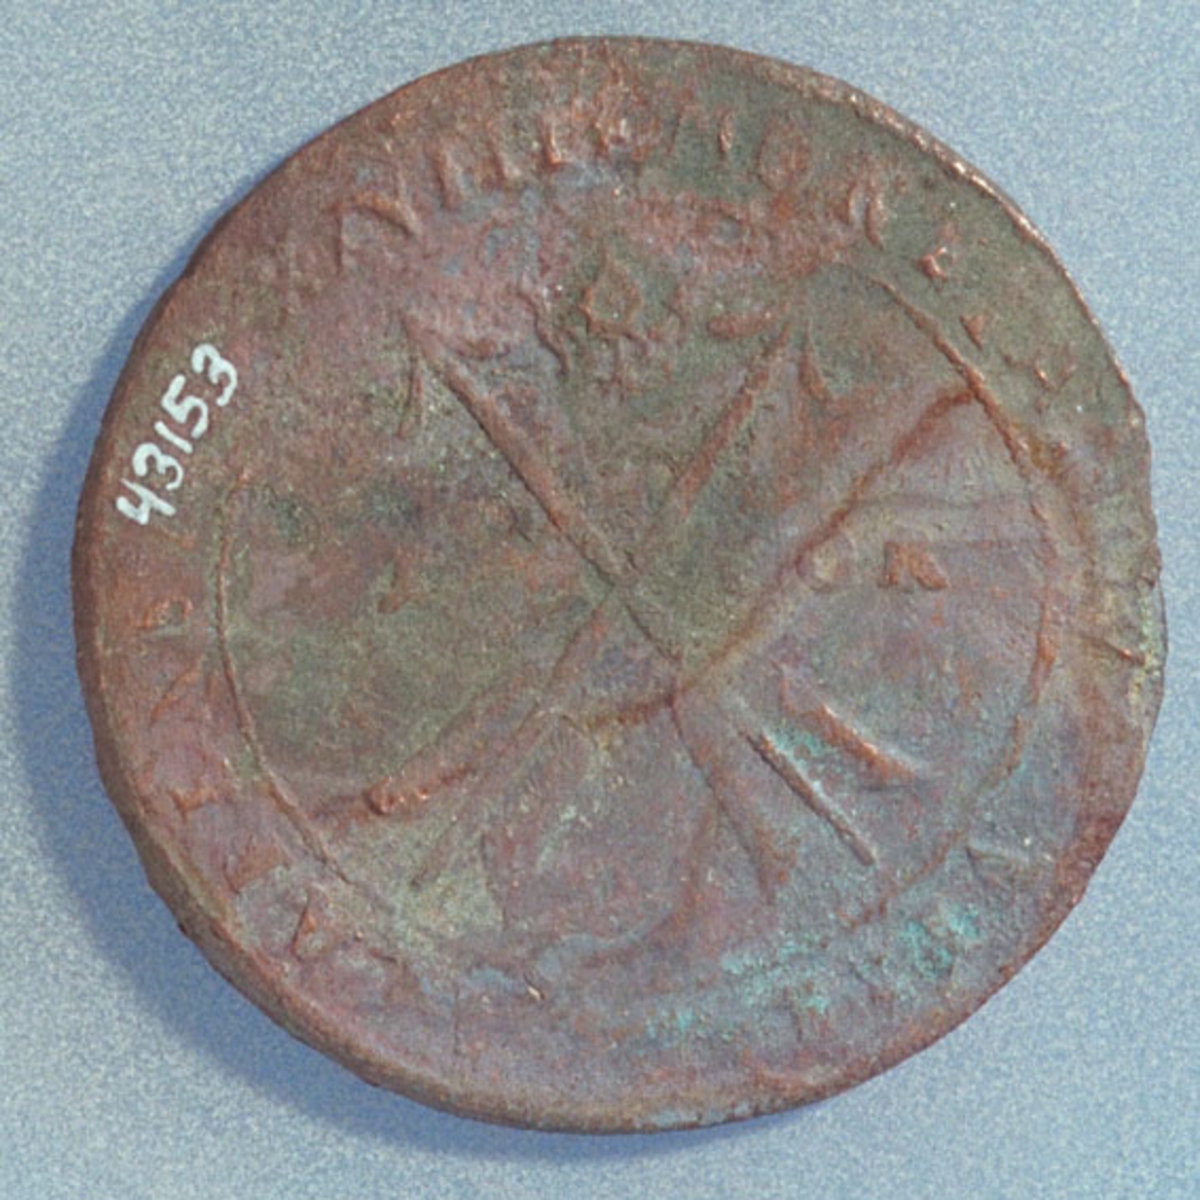 1 öre
Runt mynt.
Bägge sidor slitna och korroderade.
Vikt: 25,1 gram.